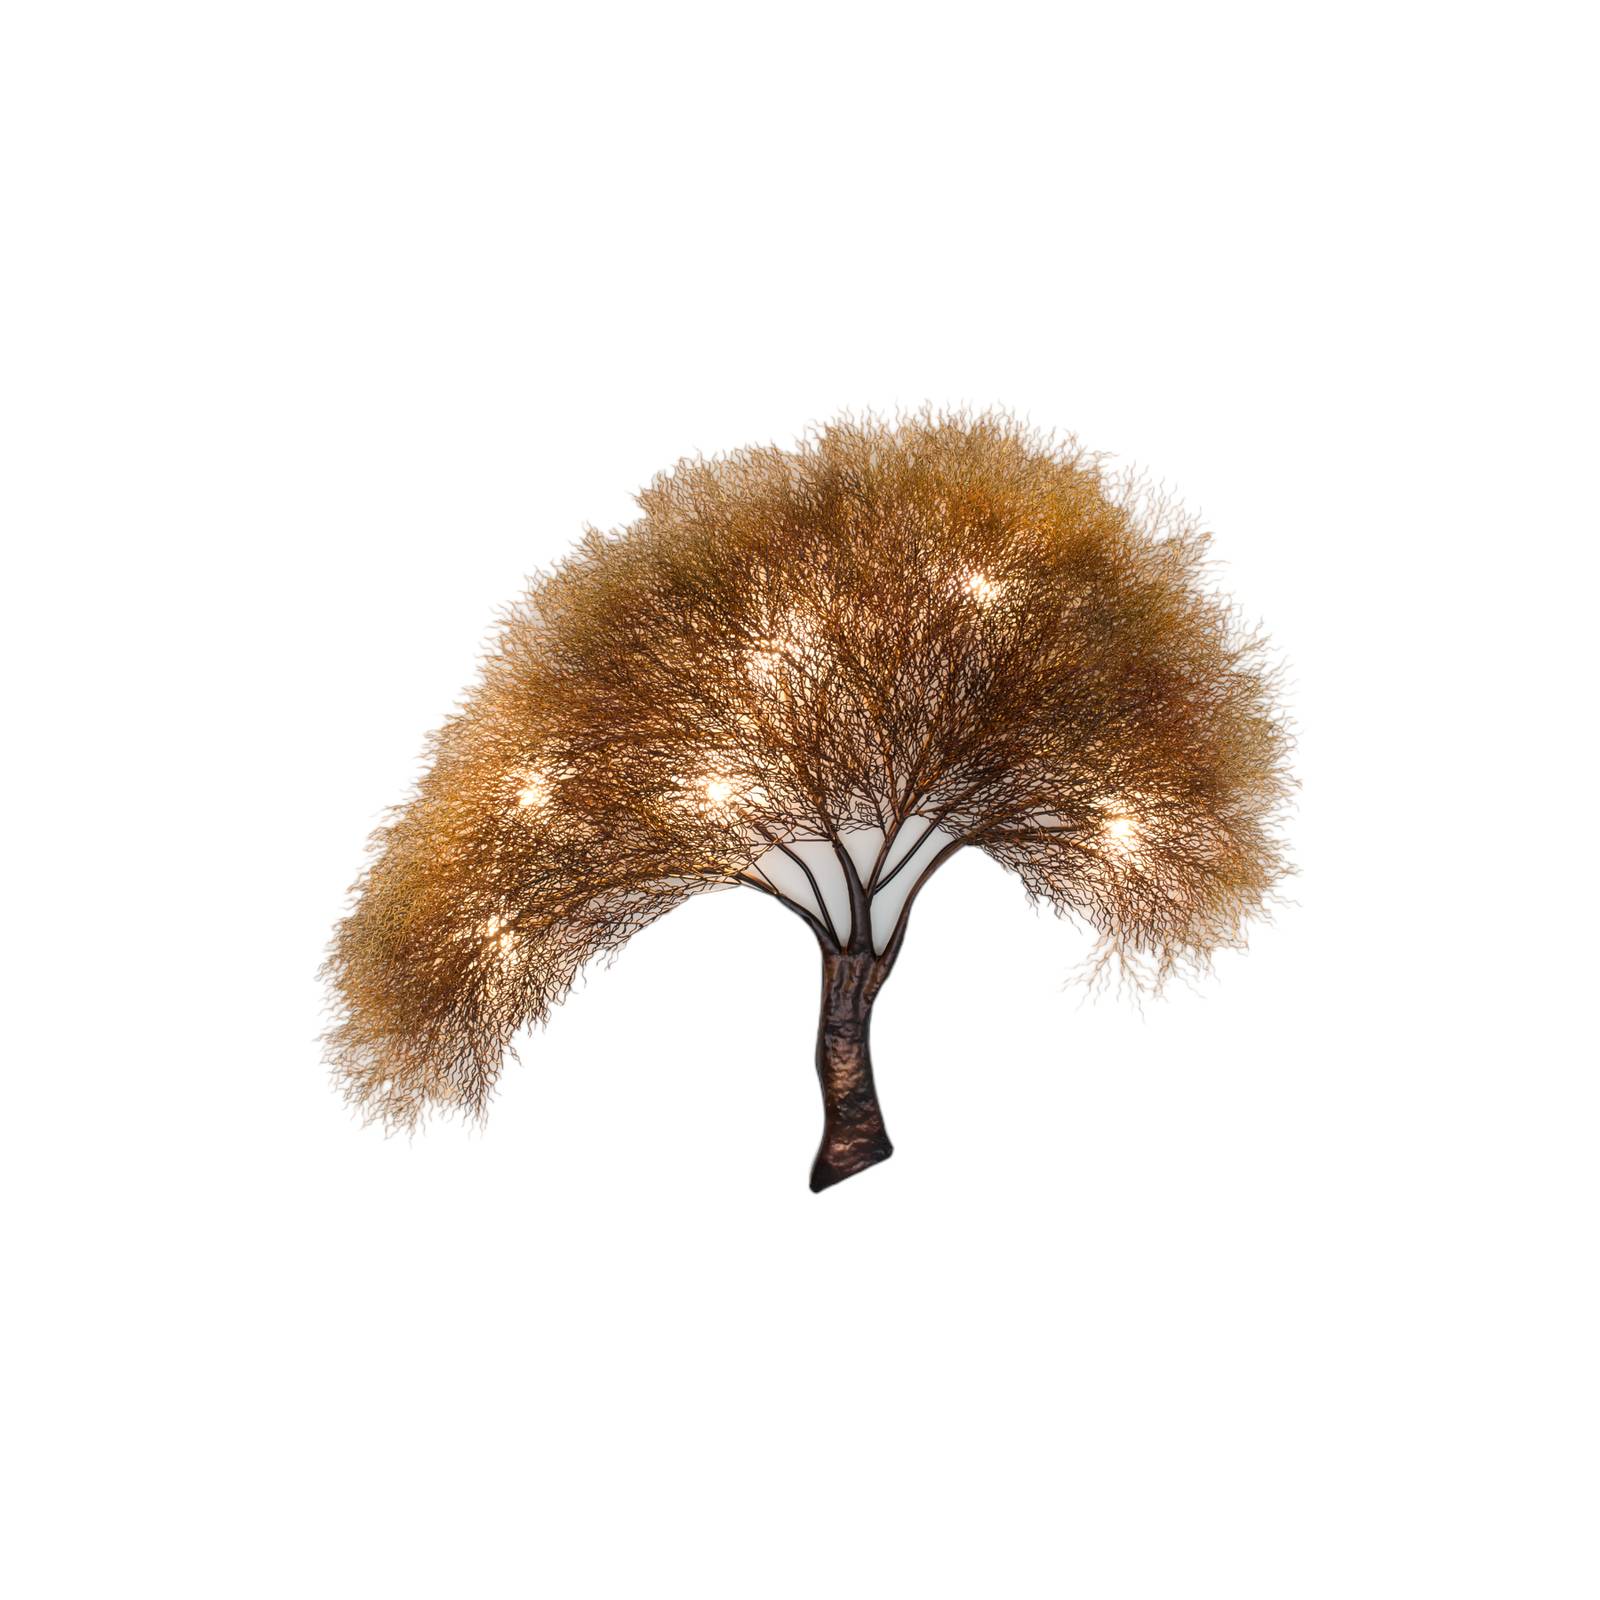 Bild von Wandleuchte Acacia im Baumdesign, dimmbar